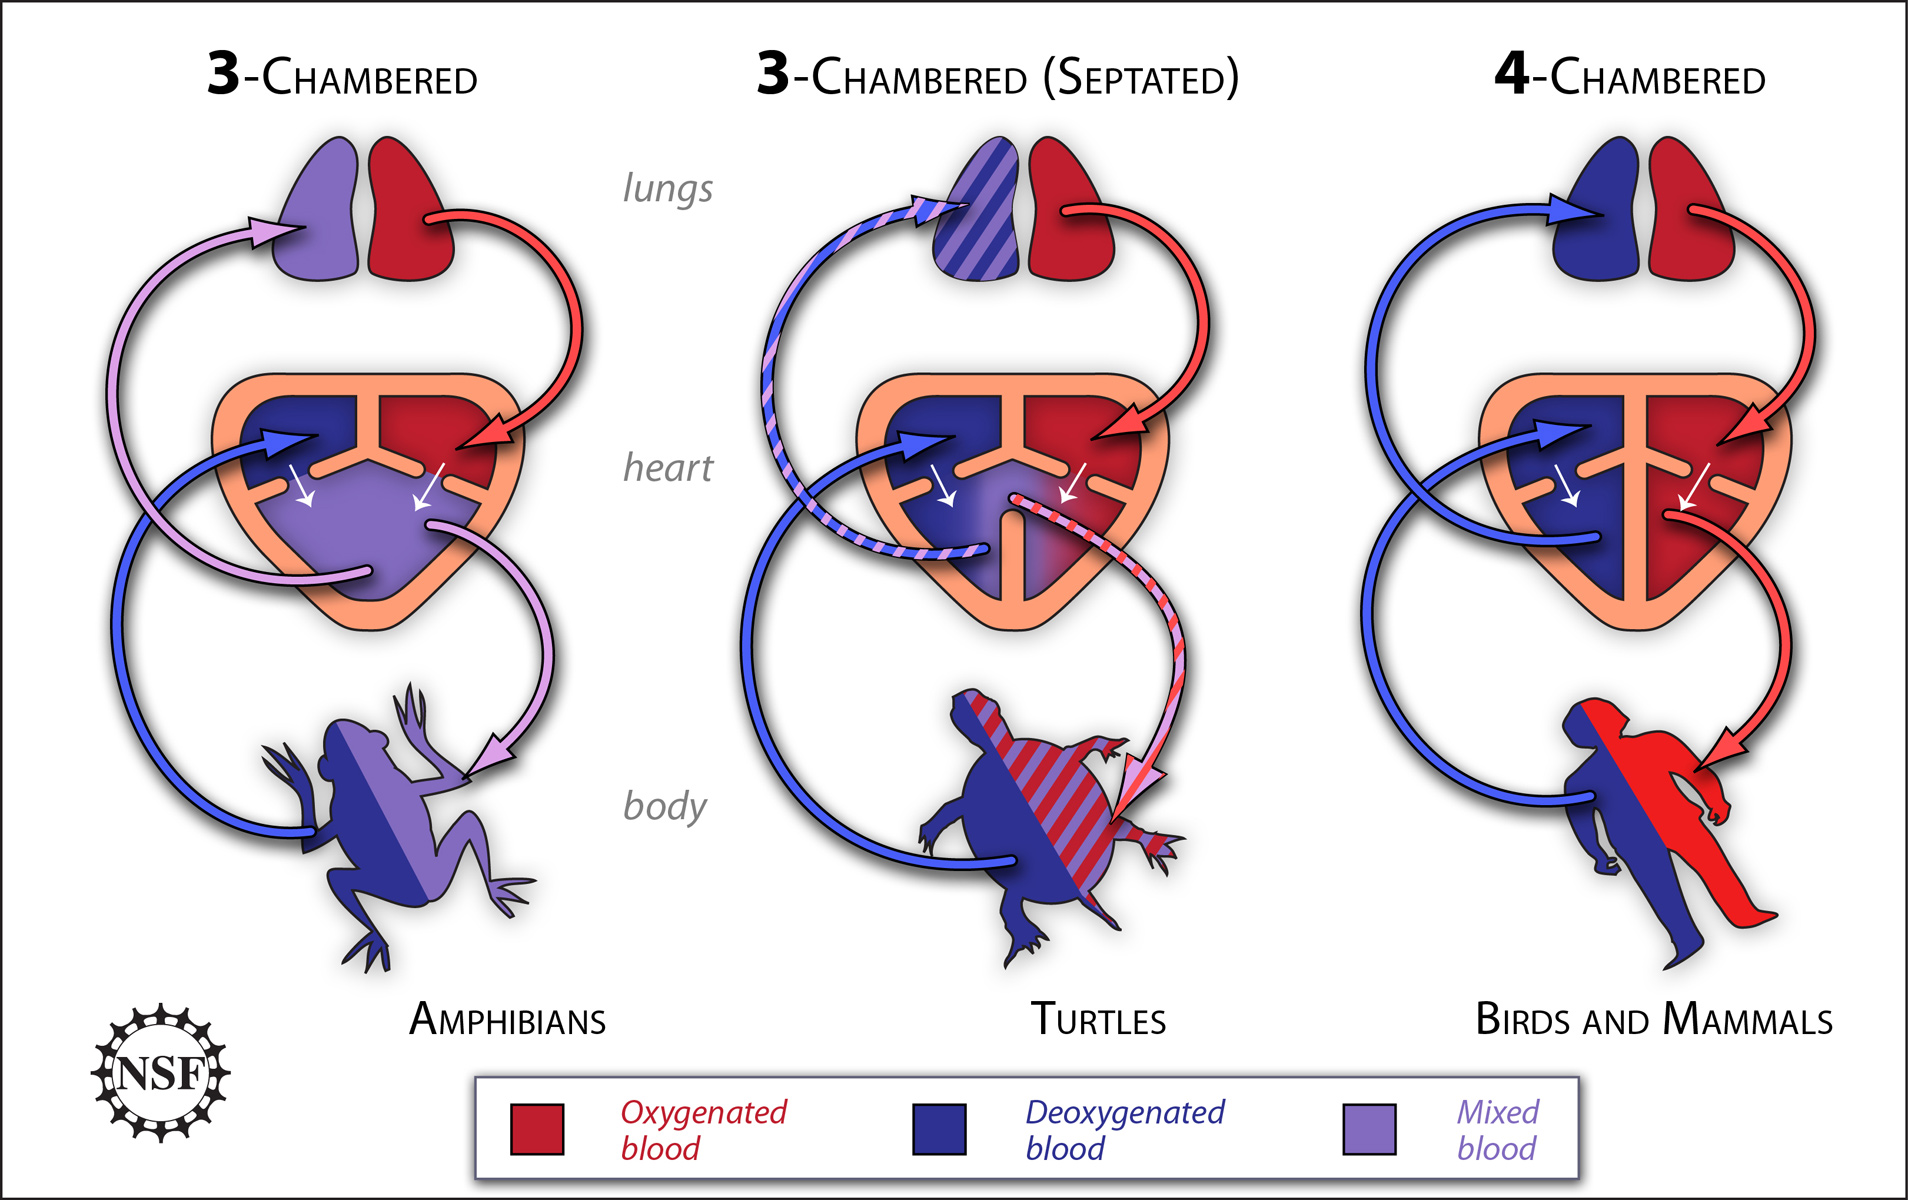 reptiles circulatory system